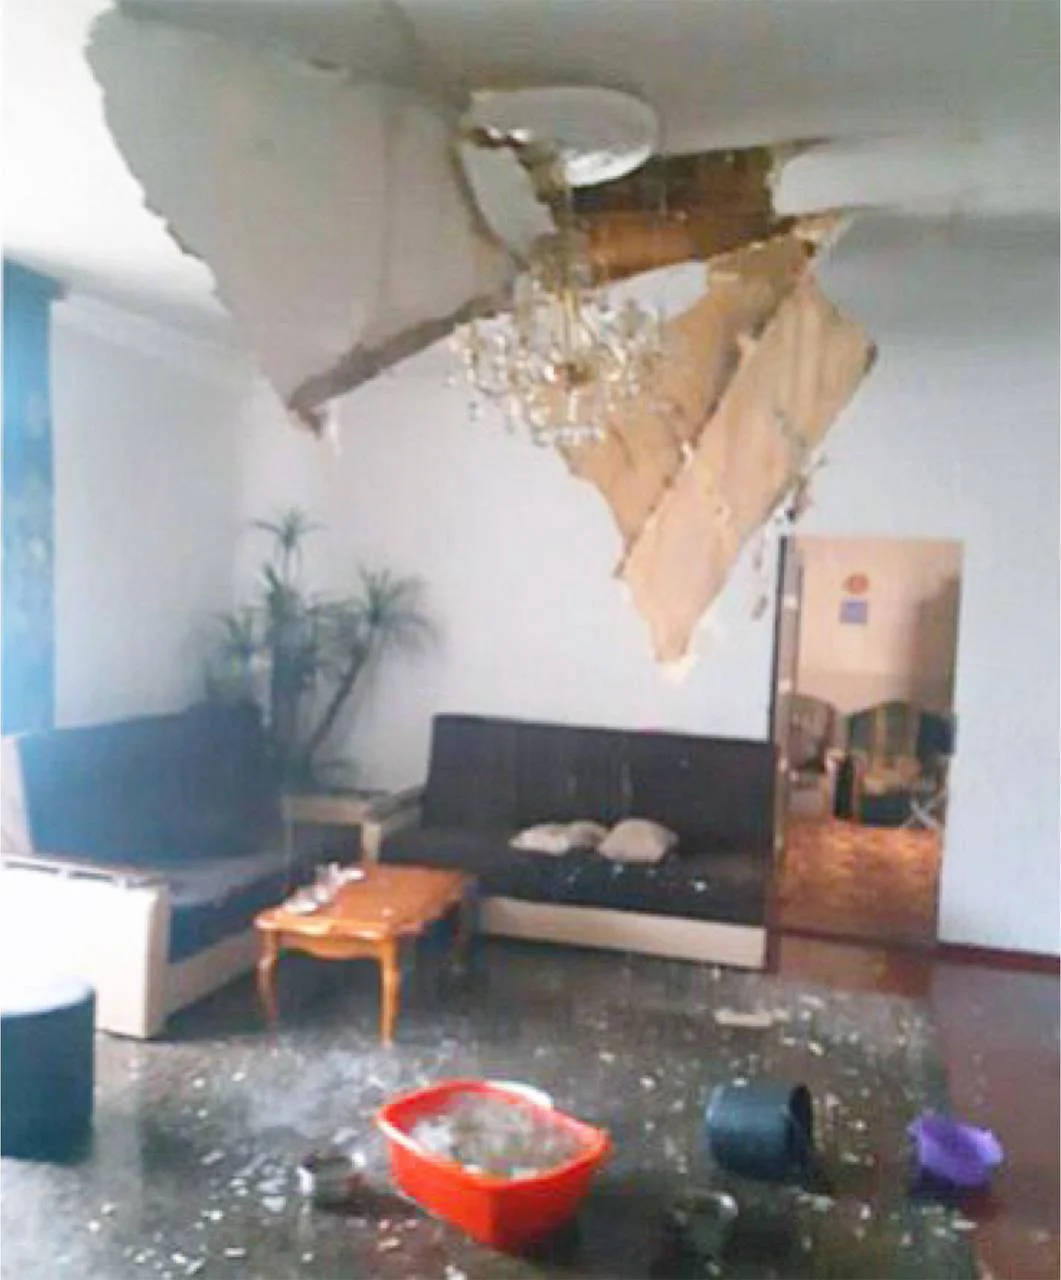 В Ростове-на-Дону град насквозь пробил крышу частного дома на ЗЖМ